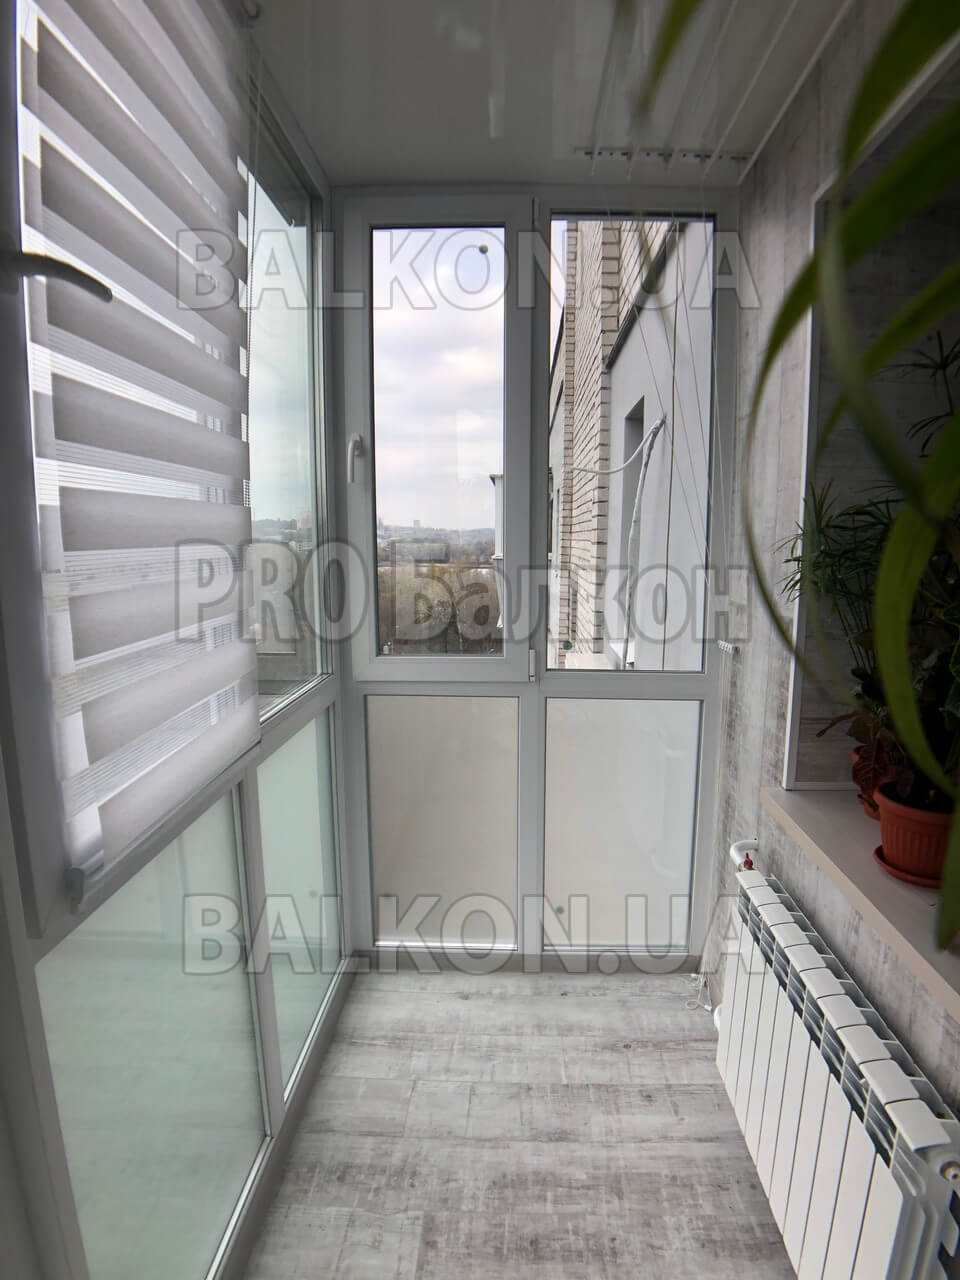 Теплый французский балкон с выносом по полу. Обшивка внутри ламинат. Киев, Набережно Корчуватская 92 07